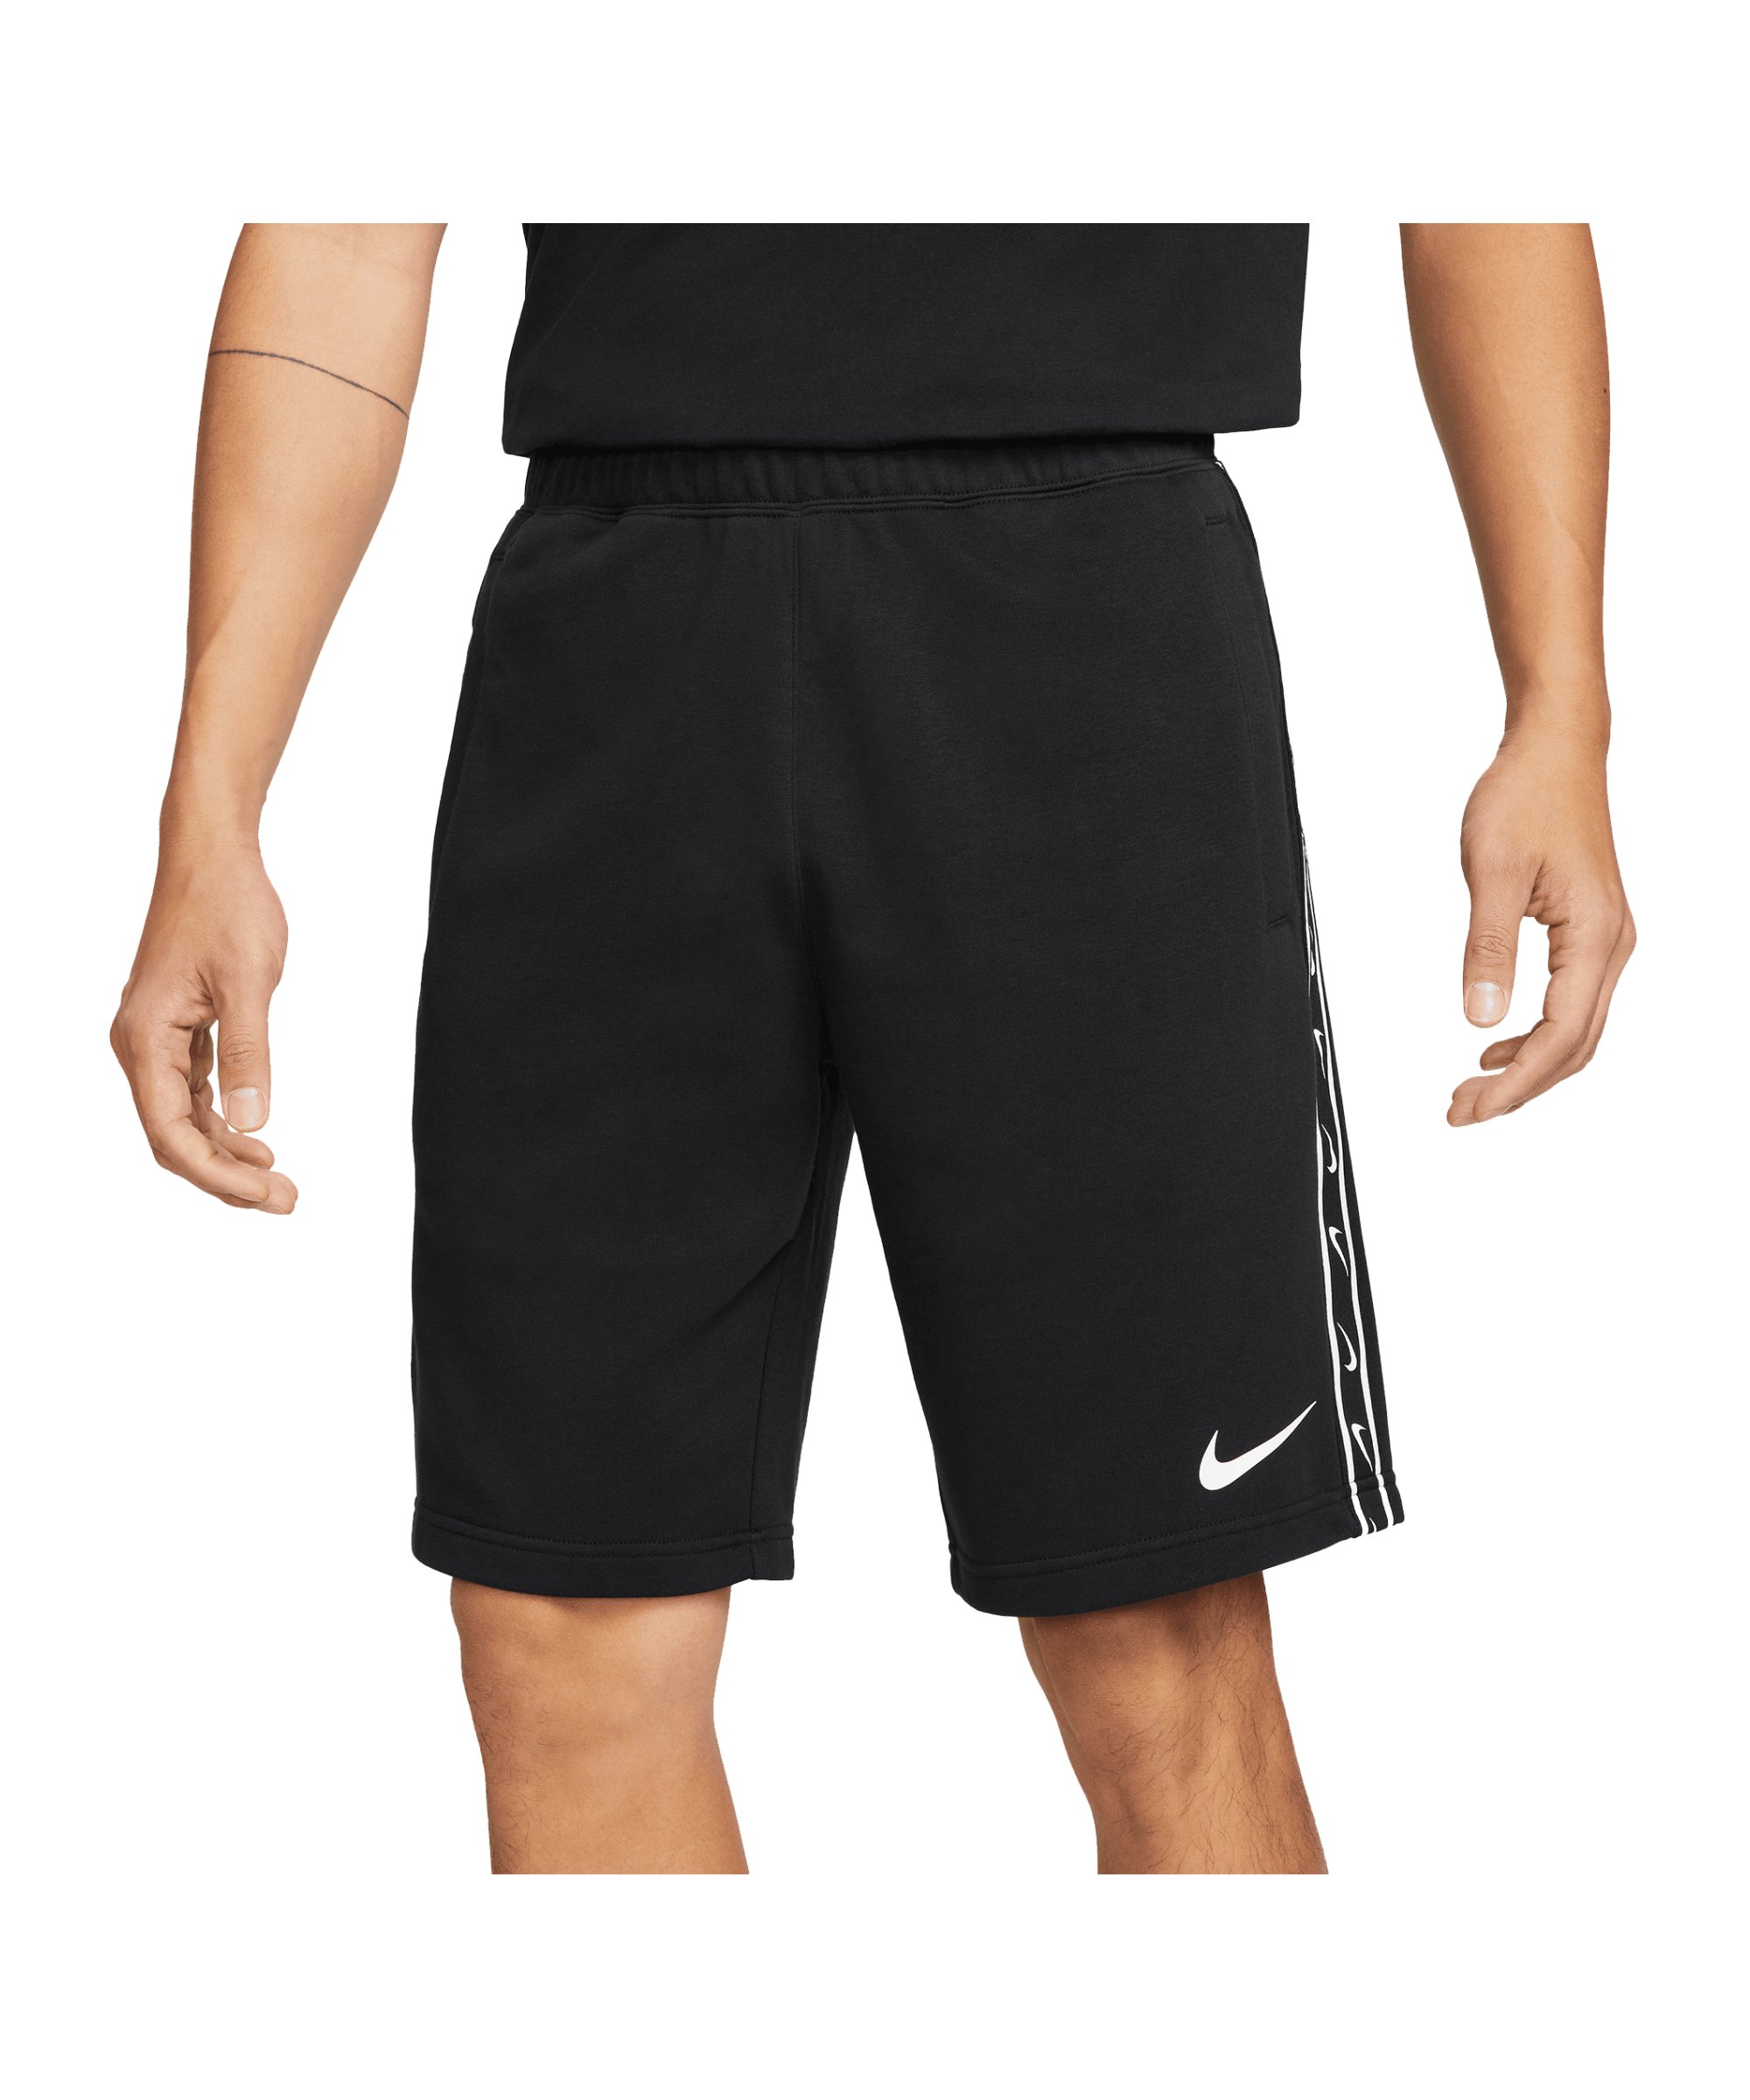 Nike Repeat Fleece Short Schwarz Weiss F010 - schwarz